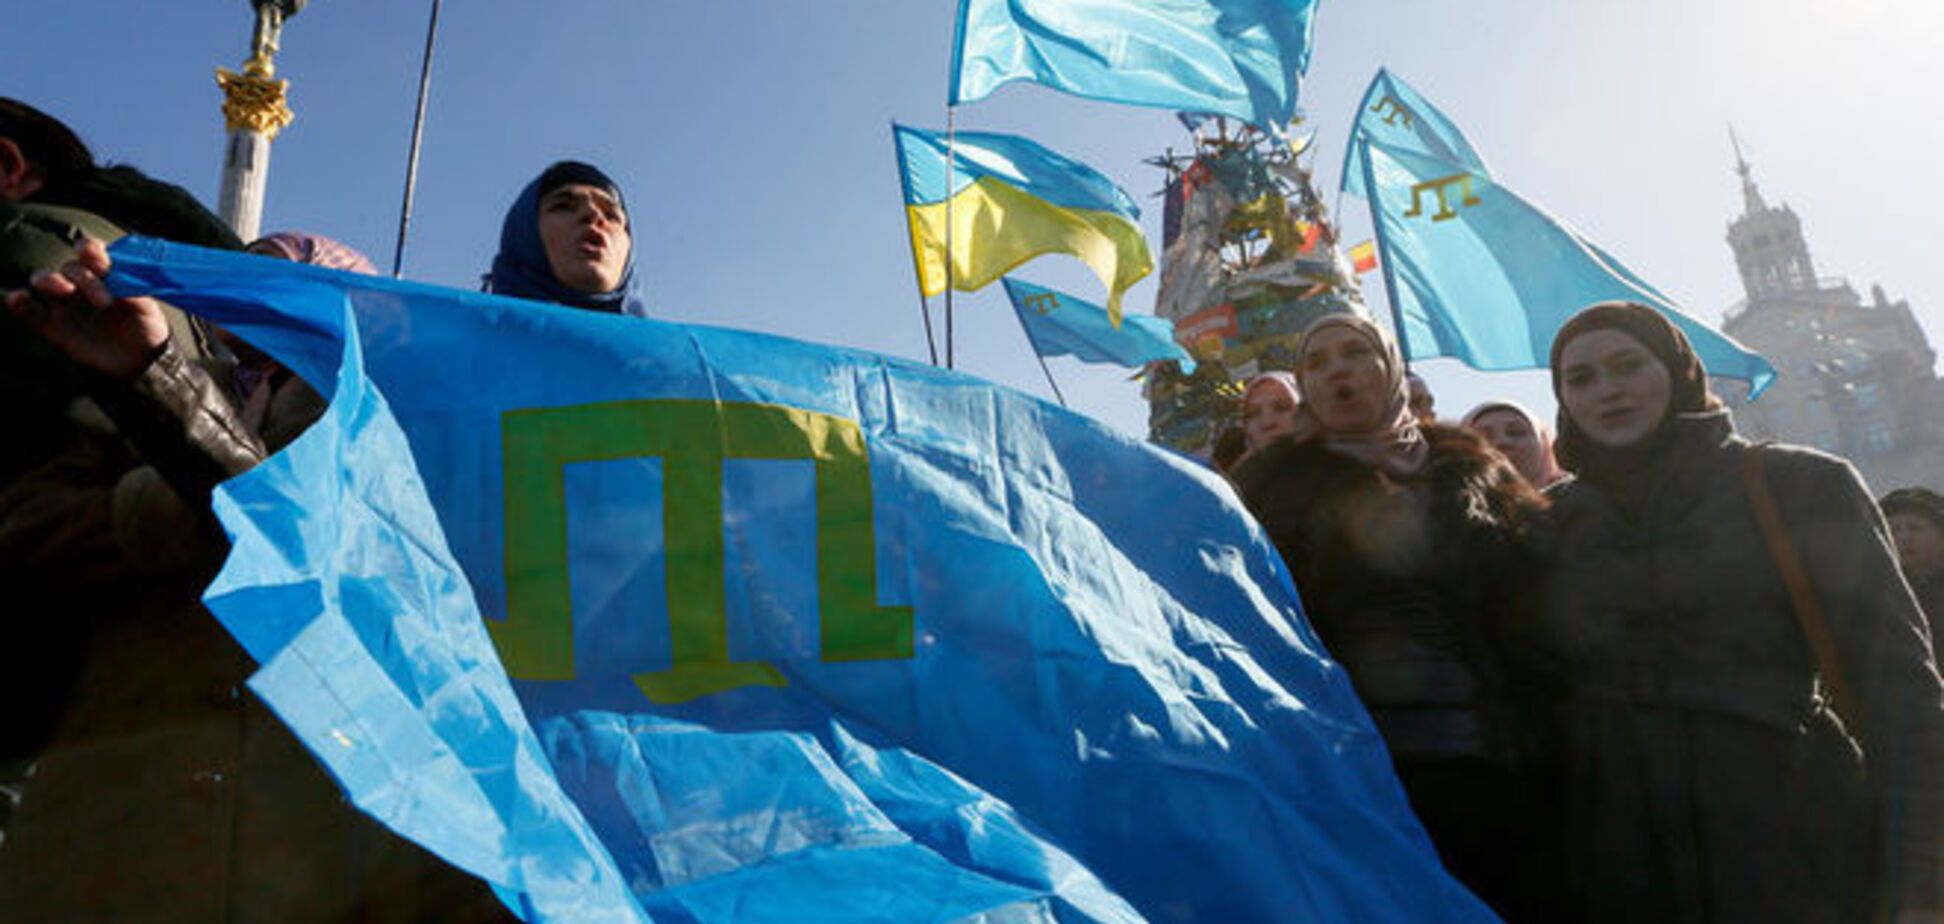 Яценюк видел угрозу терроризма в крымских татарах: редкое видео